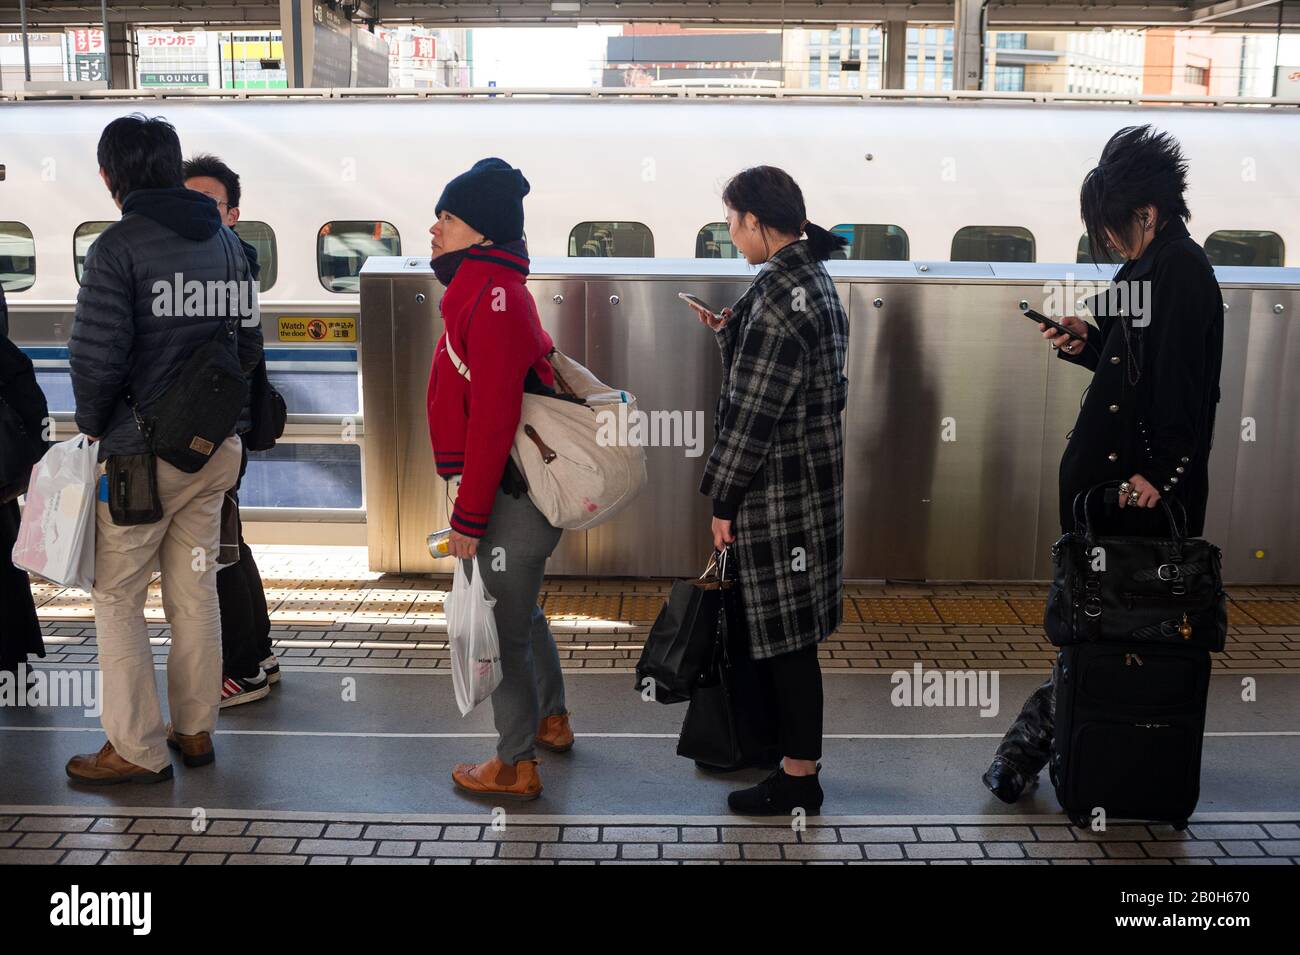 30.12.2017, Nagoya, Aichi, Japan - Bahnreisende warten auf den Schnellzug Shinkansen auf einem Bahnsteig am Hauptbahnhof. 0SL171230D042CAROEX.JPG Stockfoto